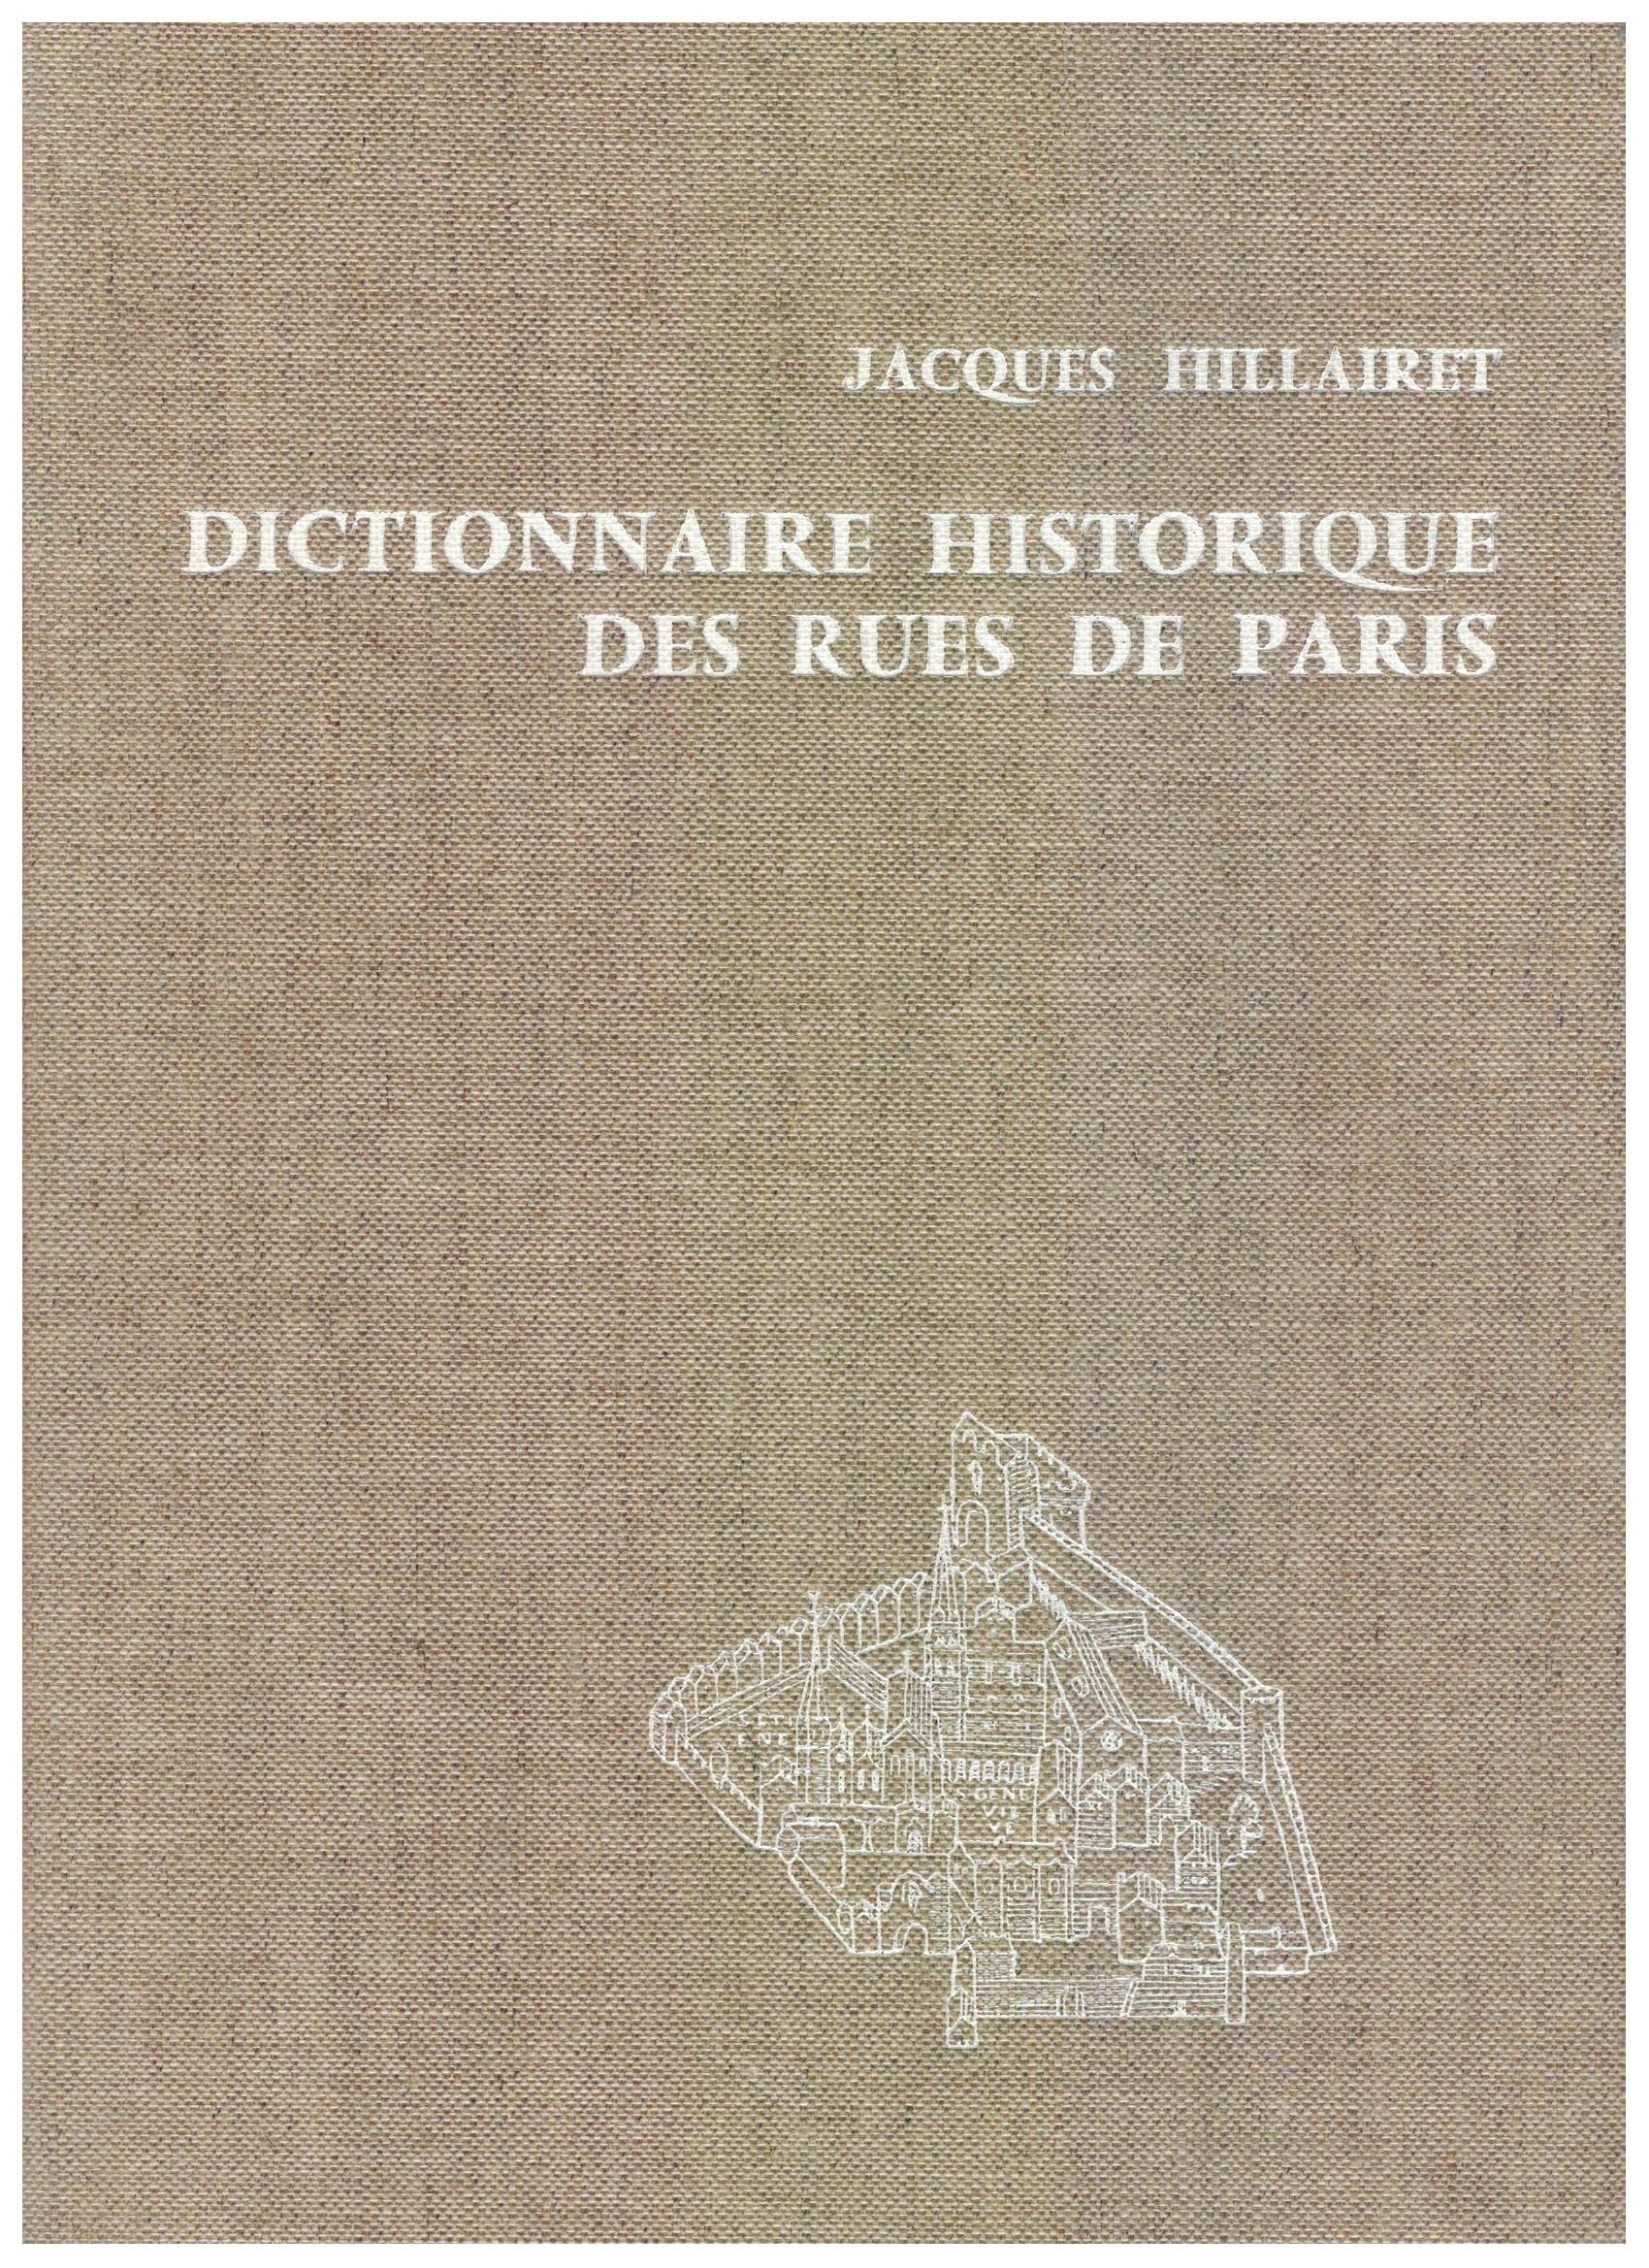 Dictionnaire historique des rues de Paris, tomes 1 & 2 - Jacques Hillairet